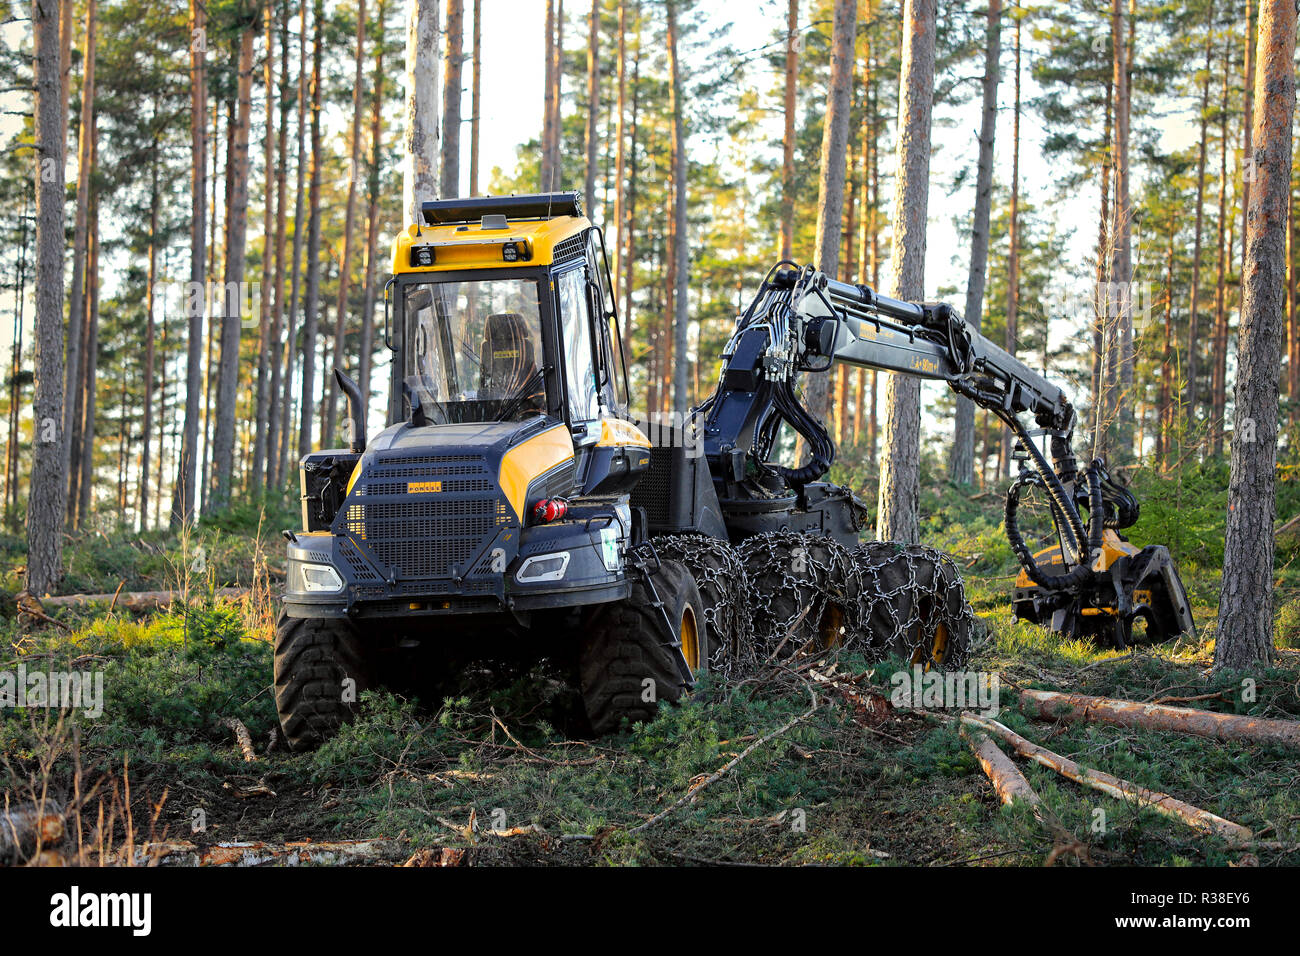 Salo, Finlande - le 18 novembre 2018 : site en forêt de pin finlandais pour un jour de l'automne avec forêt Ponsse Ergo harvester. Très légèrement HDR appliquée. Banque D'Images